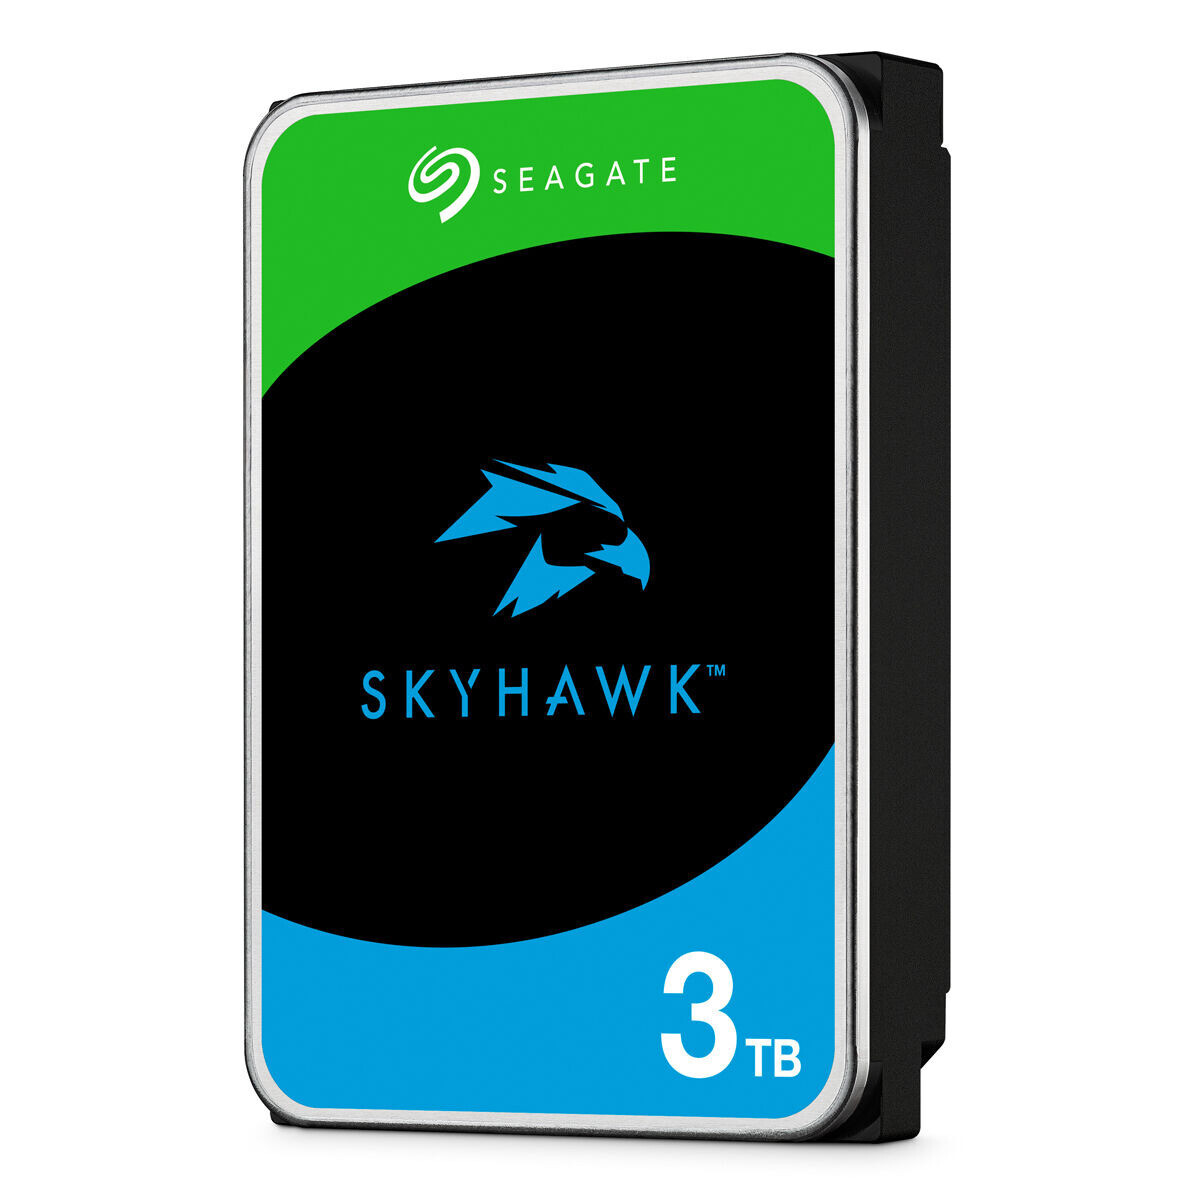 Seagate Skyhawk Surveillance +Rescue 3TB HDD Σκληρός Δίσκος 3.5″ SATA III 5900rpm με 256MB Cache για Καταγραφικό